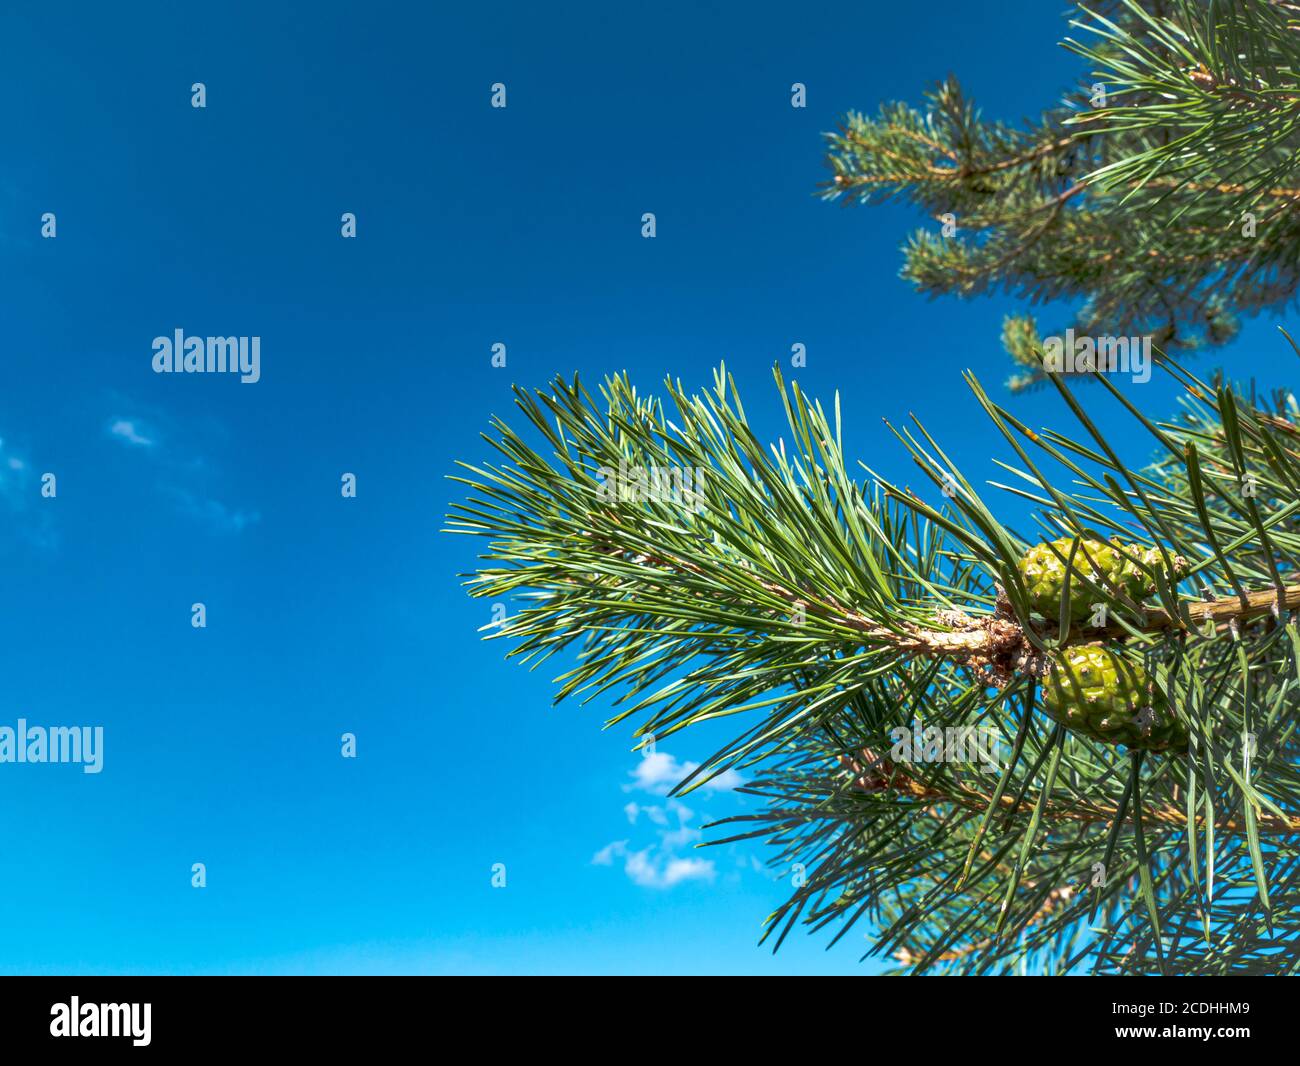 Ramo di pino con coni verdi contro un cielo blu. Pinery. Foresta. Albero di Natale. Giorno estivo limpido. Immagine di sfondo. Inserire il testo. Foto Stock